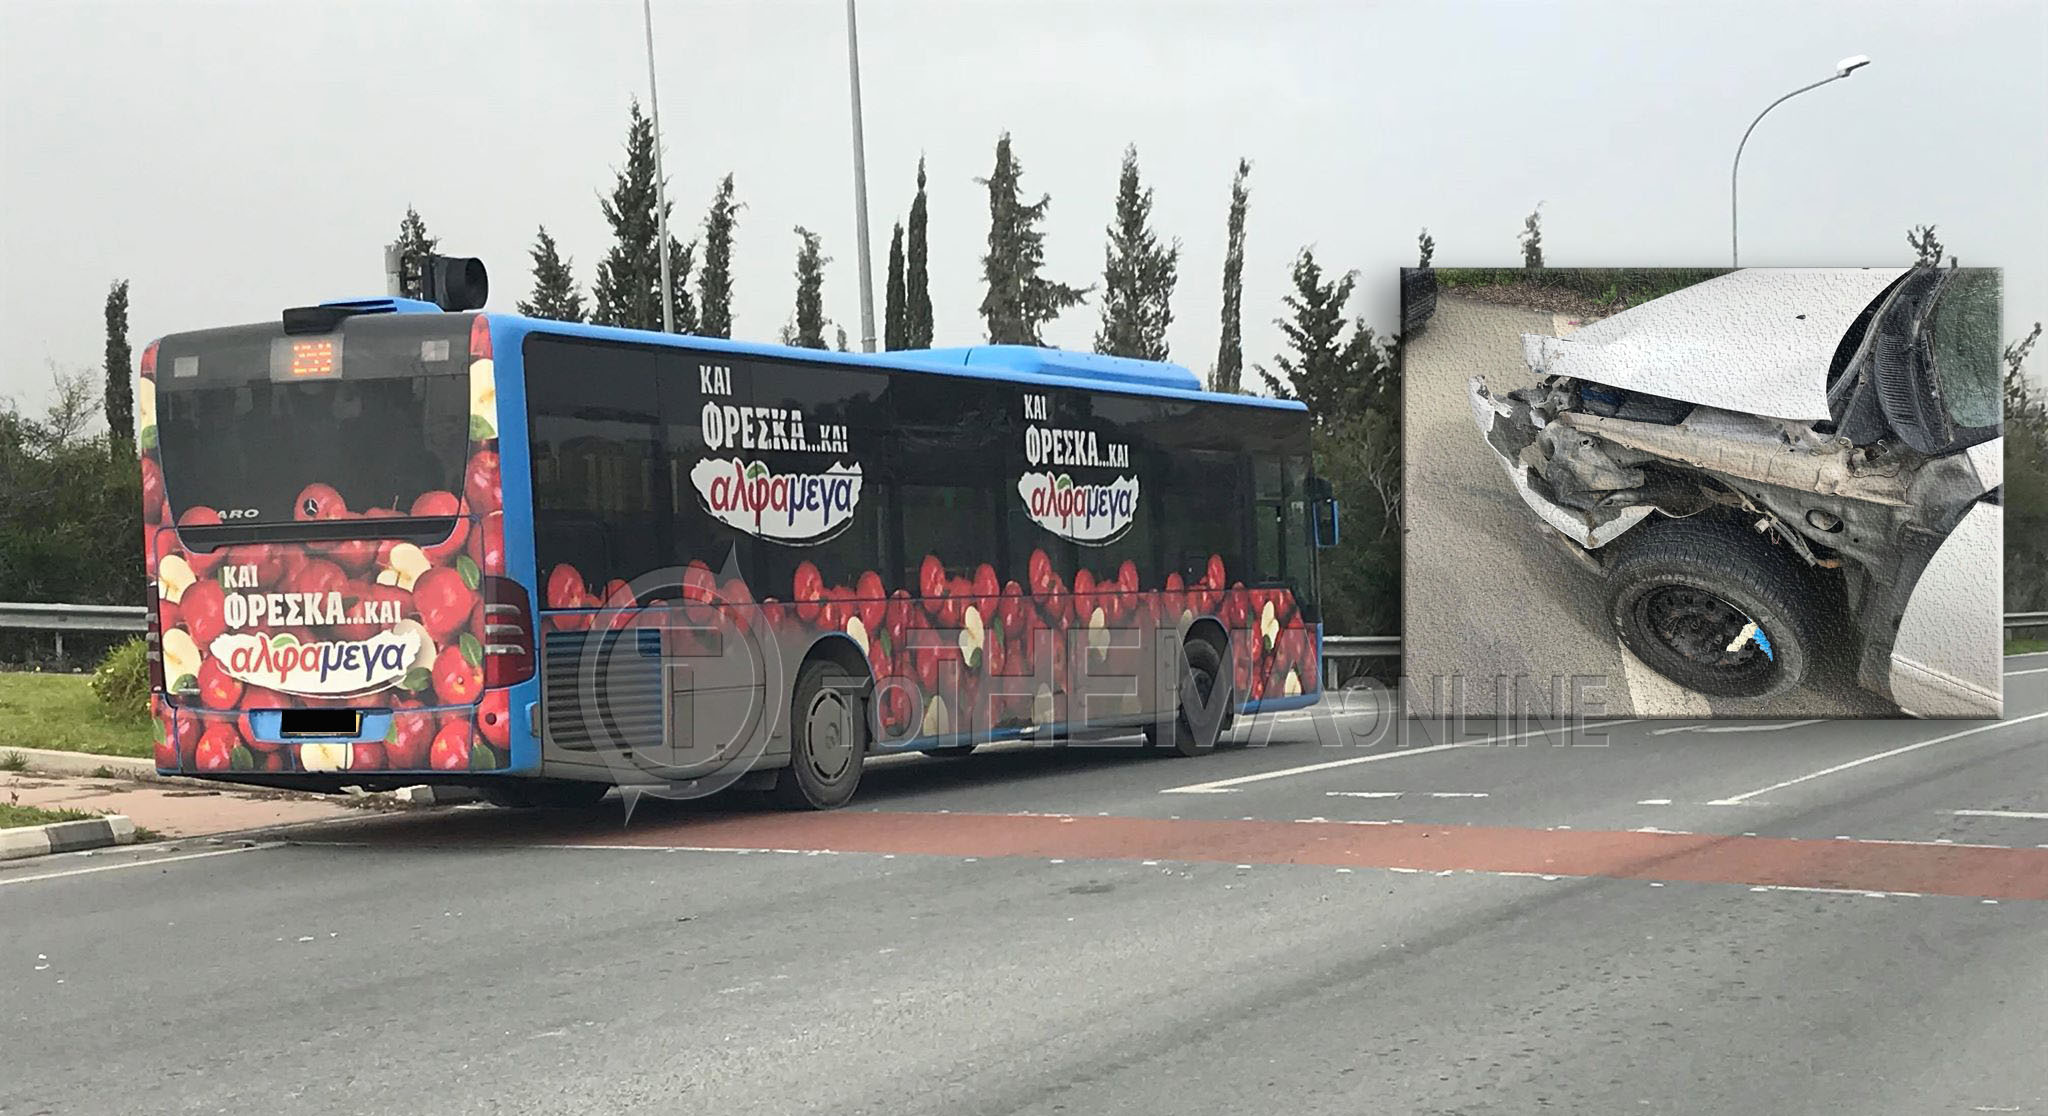 ΓΕΡΙ – ΤΡΟΧΑΙΟ: Σύγκρουση οχήματος με λεωφορείο ΟΣΕΛ  - ΦΩΤΟΓΡΑΦΙΕΣ